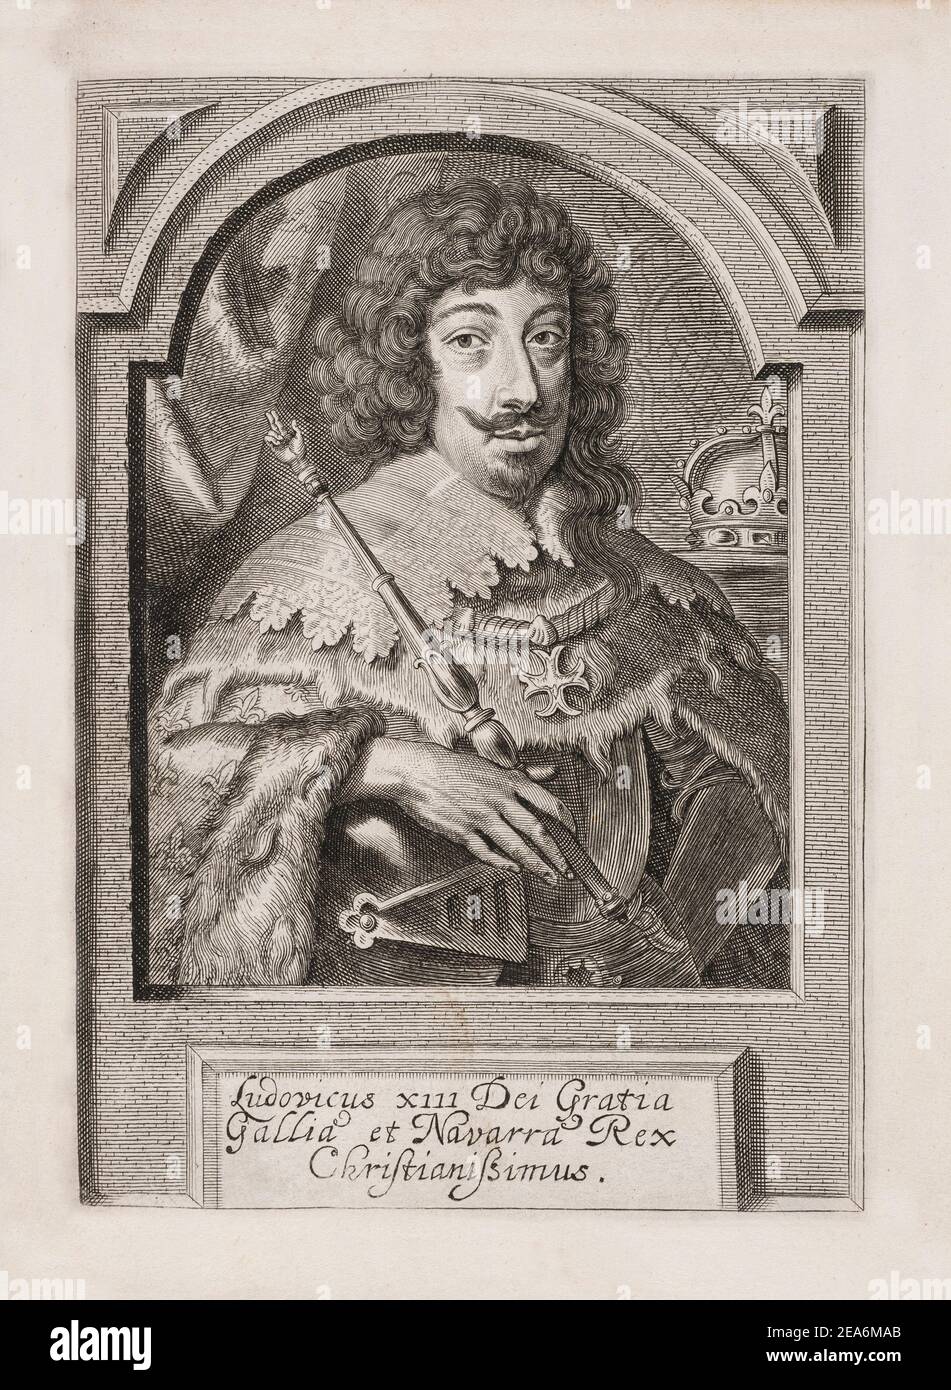 Grabado de Luis XIII (1601 - 1643), rey de Francia desde 1610 a 1643 y rey de Navarra (como Louis II) desde 1610 hasta 1620, cuando la corona de Navarra Foto de stock